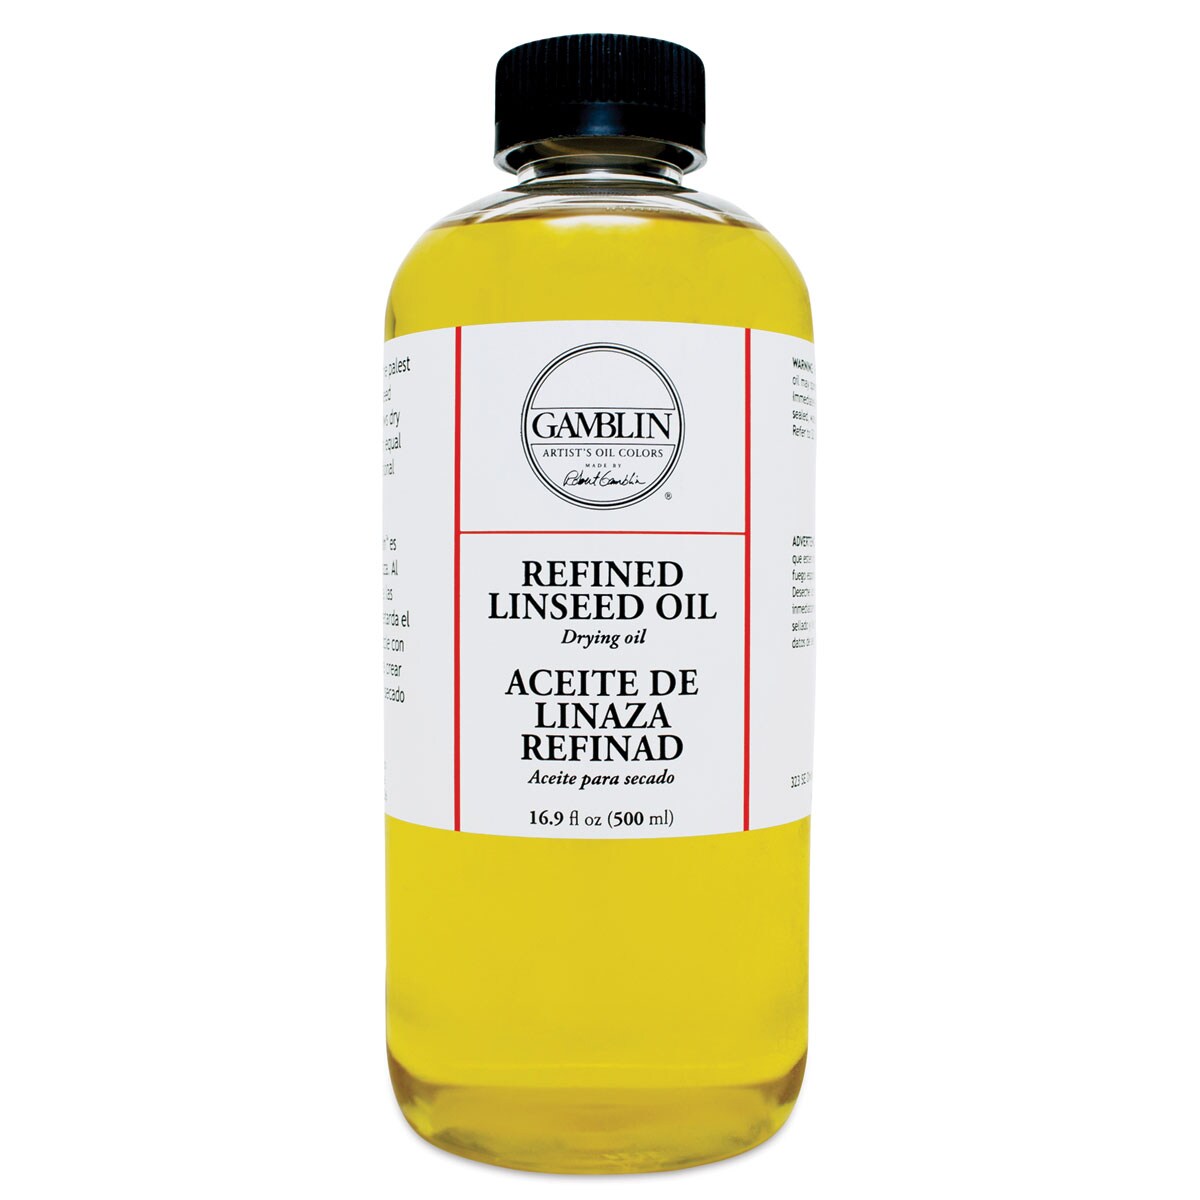 Gamblin Refined Linseed Oil - 16.9 oz bottle